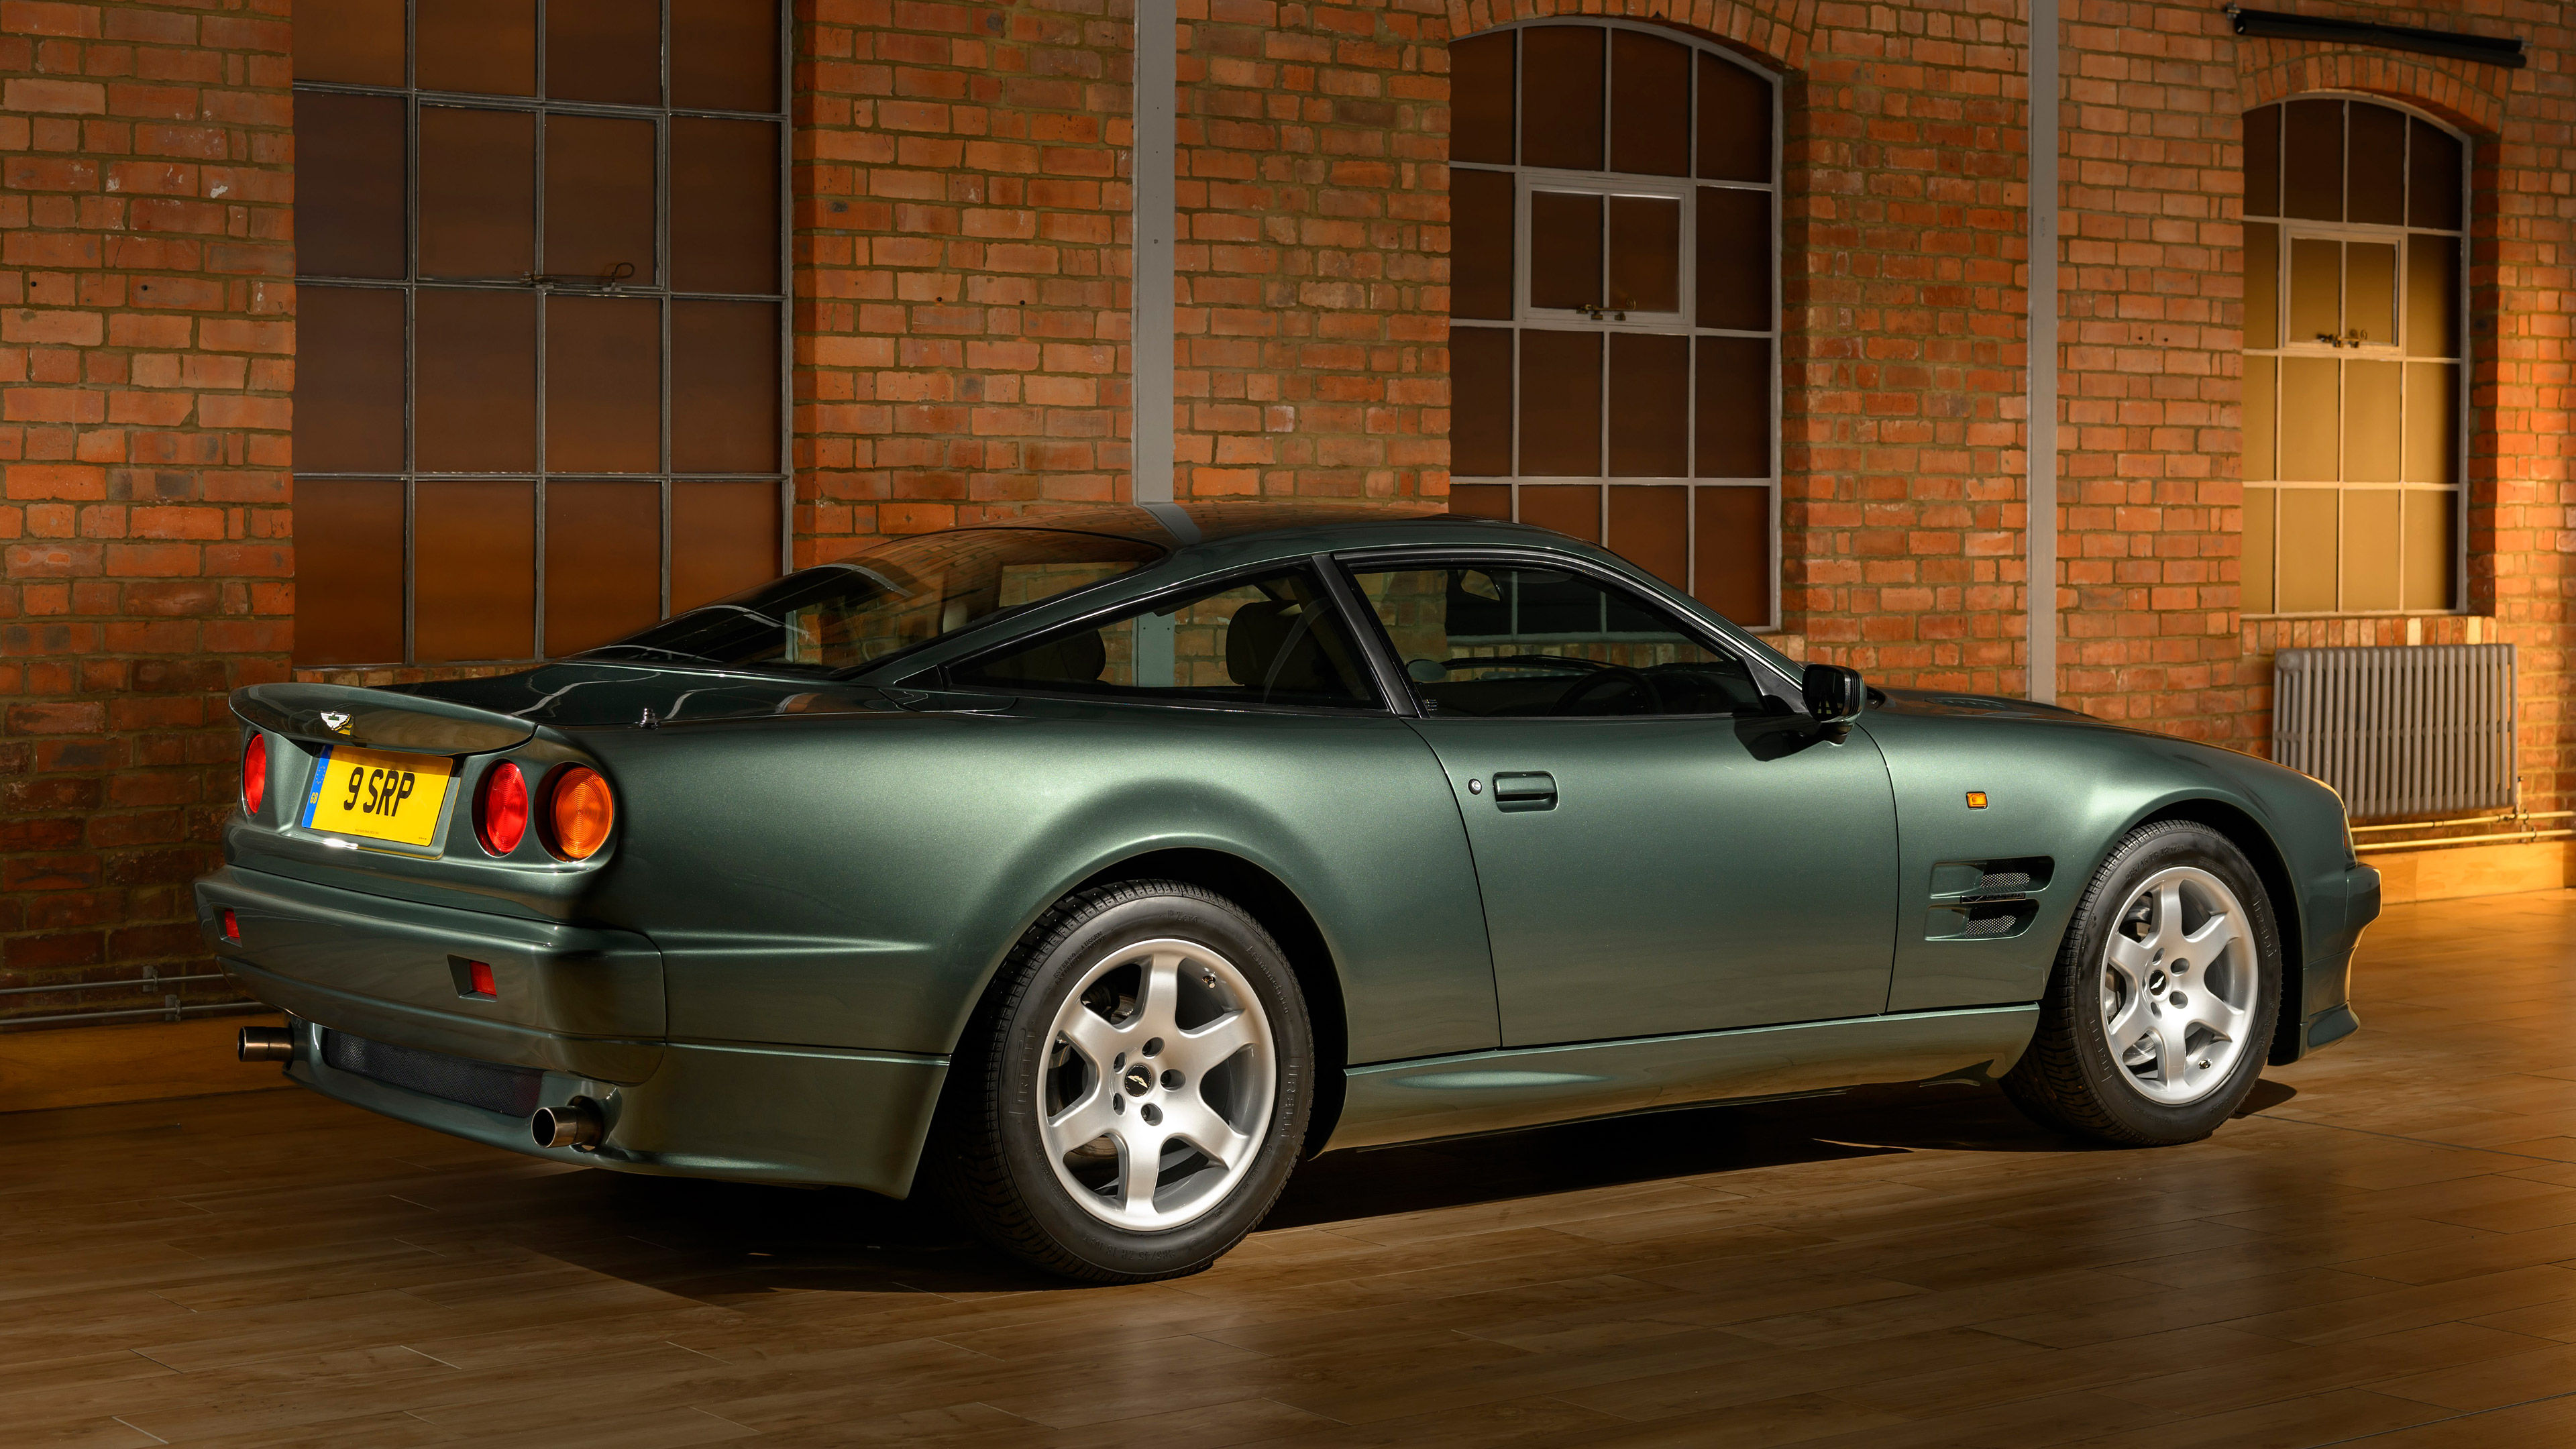  1993 Aston Martin V8 Vantage V550 Wallpaper.